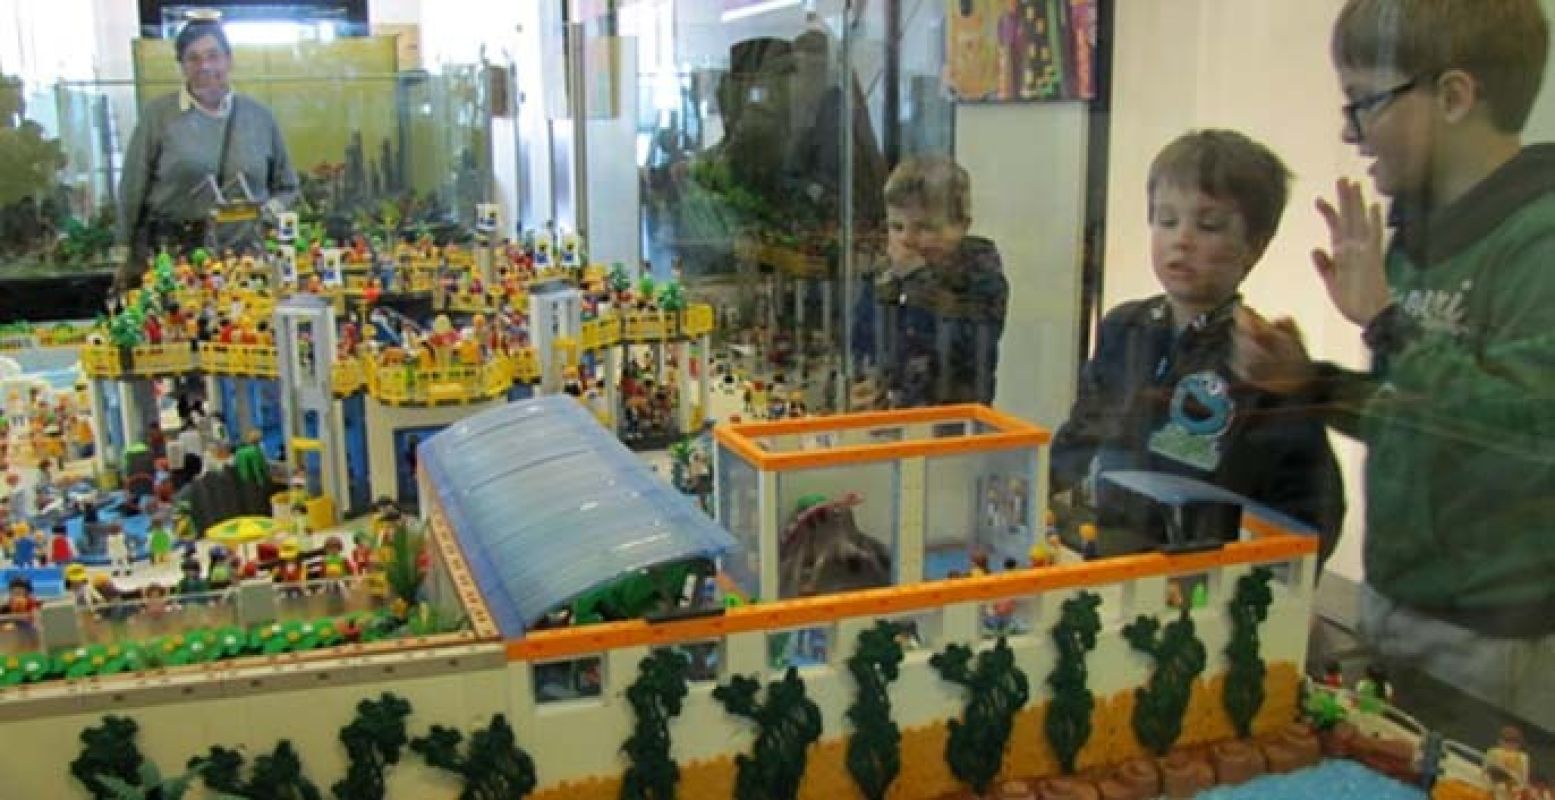 Grote landschappen van Playmobil, om je ogen bij uit te kijken! Foto: Museum van de Twintigste Eeuw